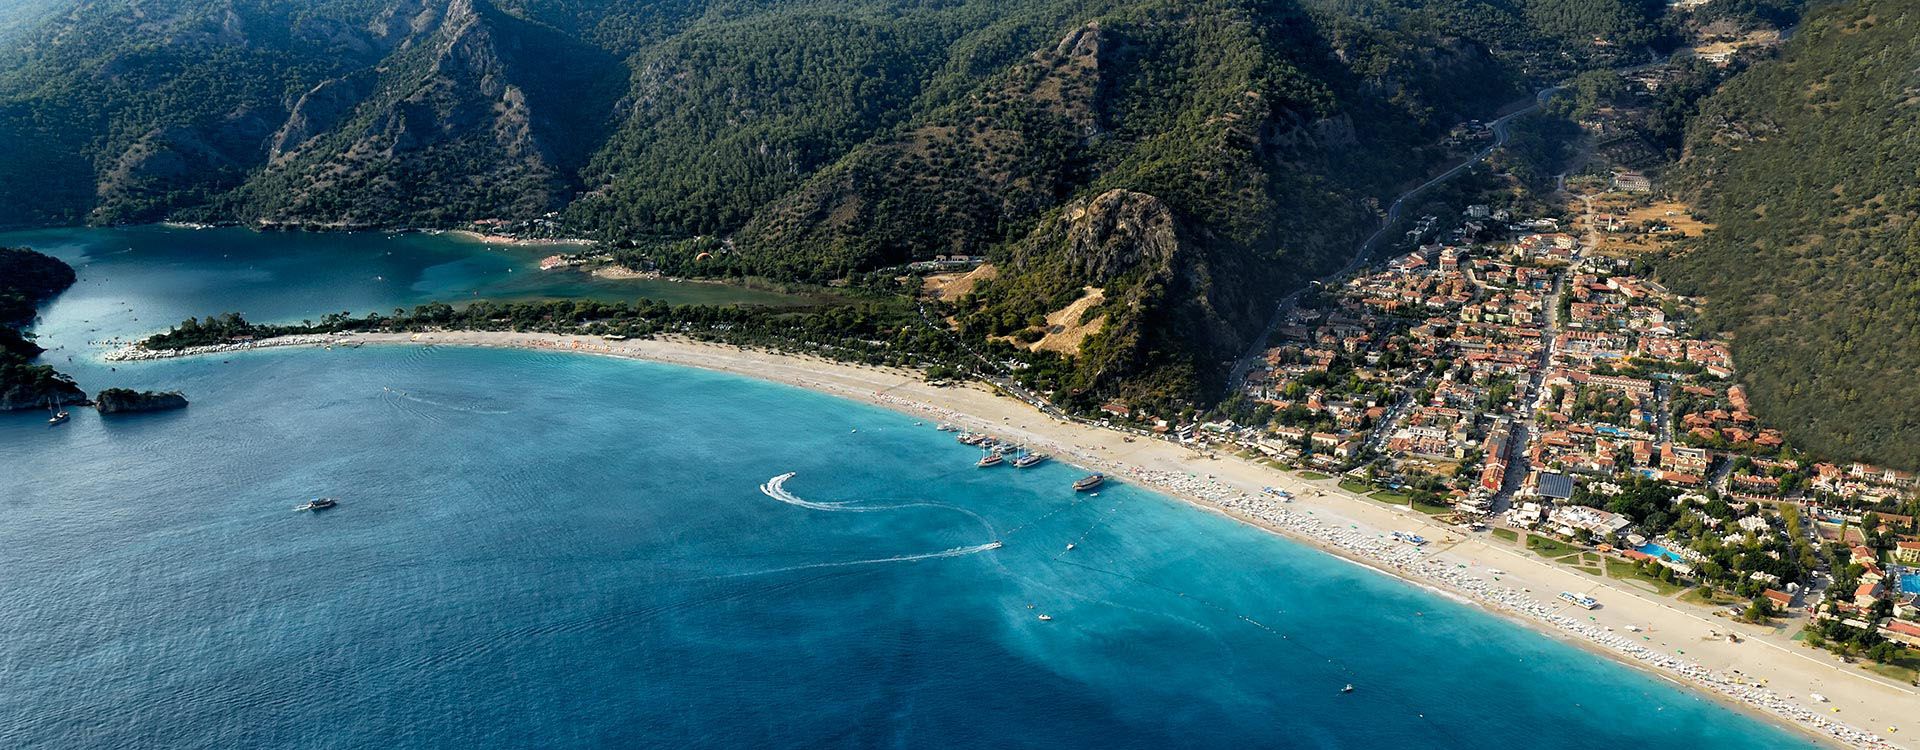 Oludeniz-beach-Fethiye-Turkey.jpg